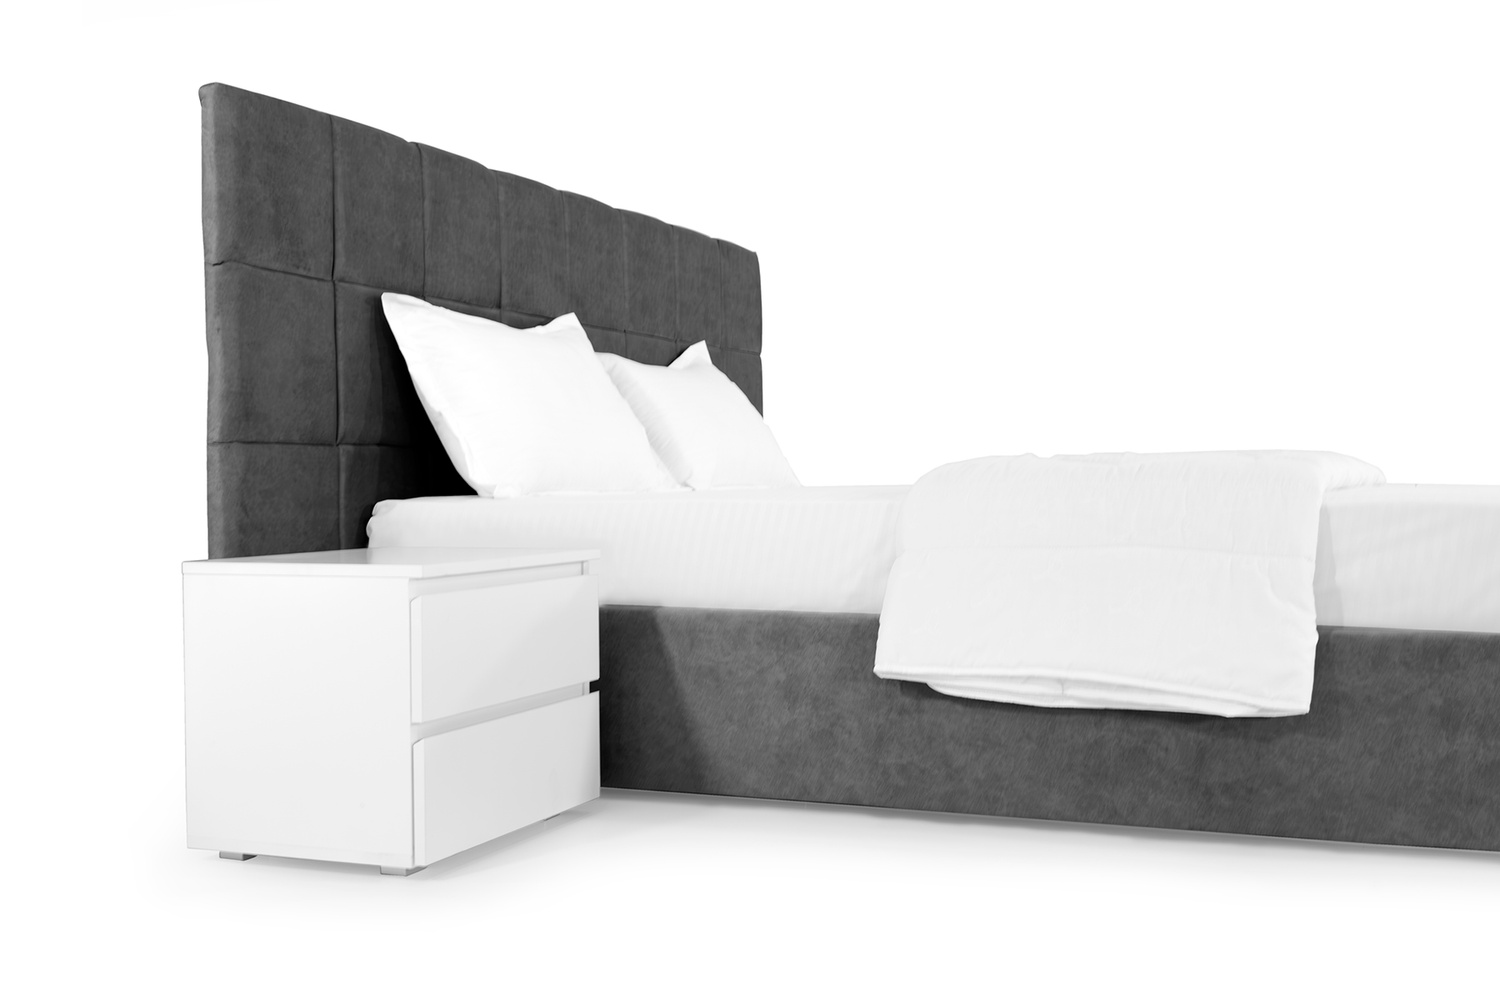 Ліжко Гортензія 140х200 (Темно-сірий, ламелі, без підйомного механізму) IMI grtnz140x200tsb фото